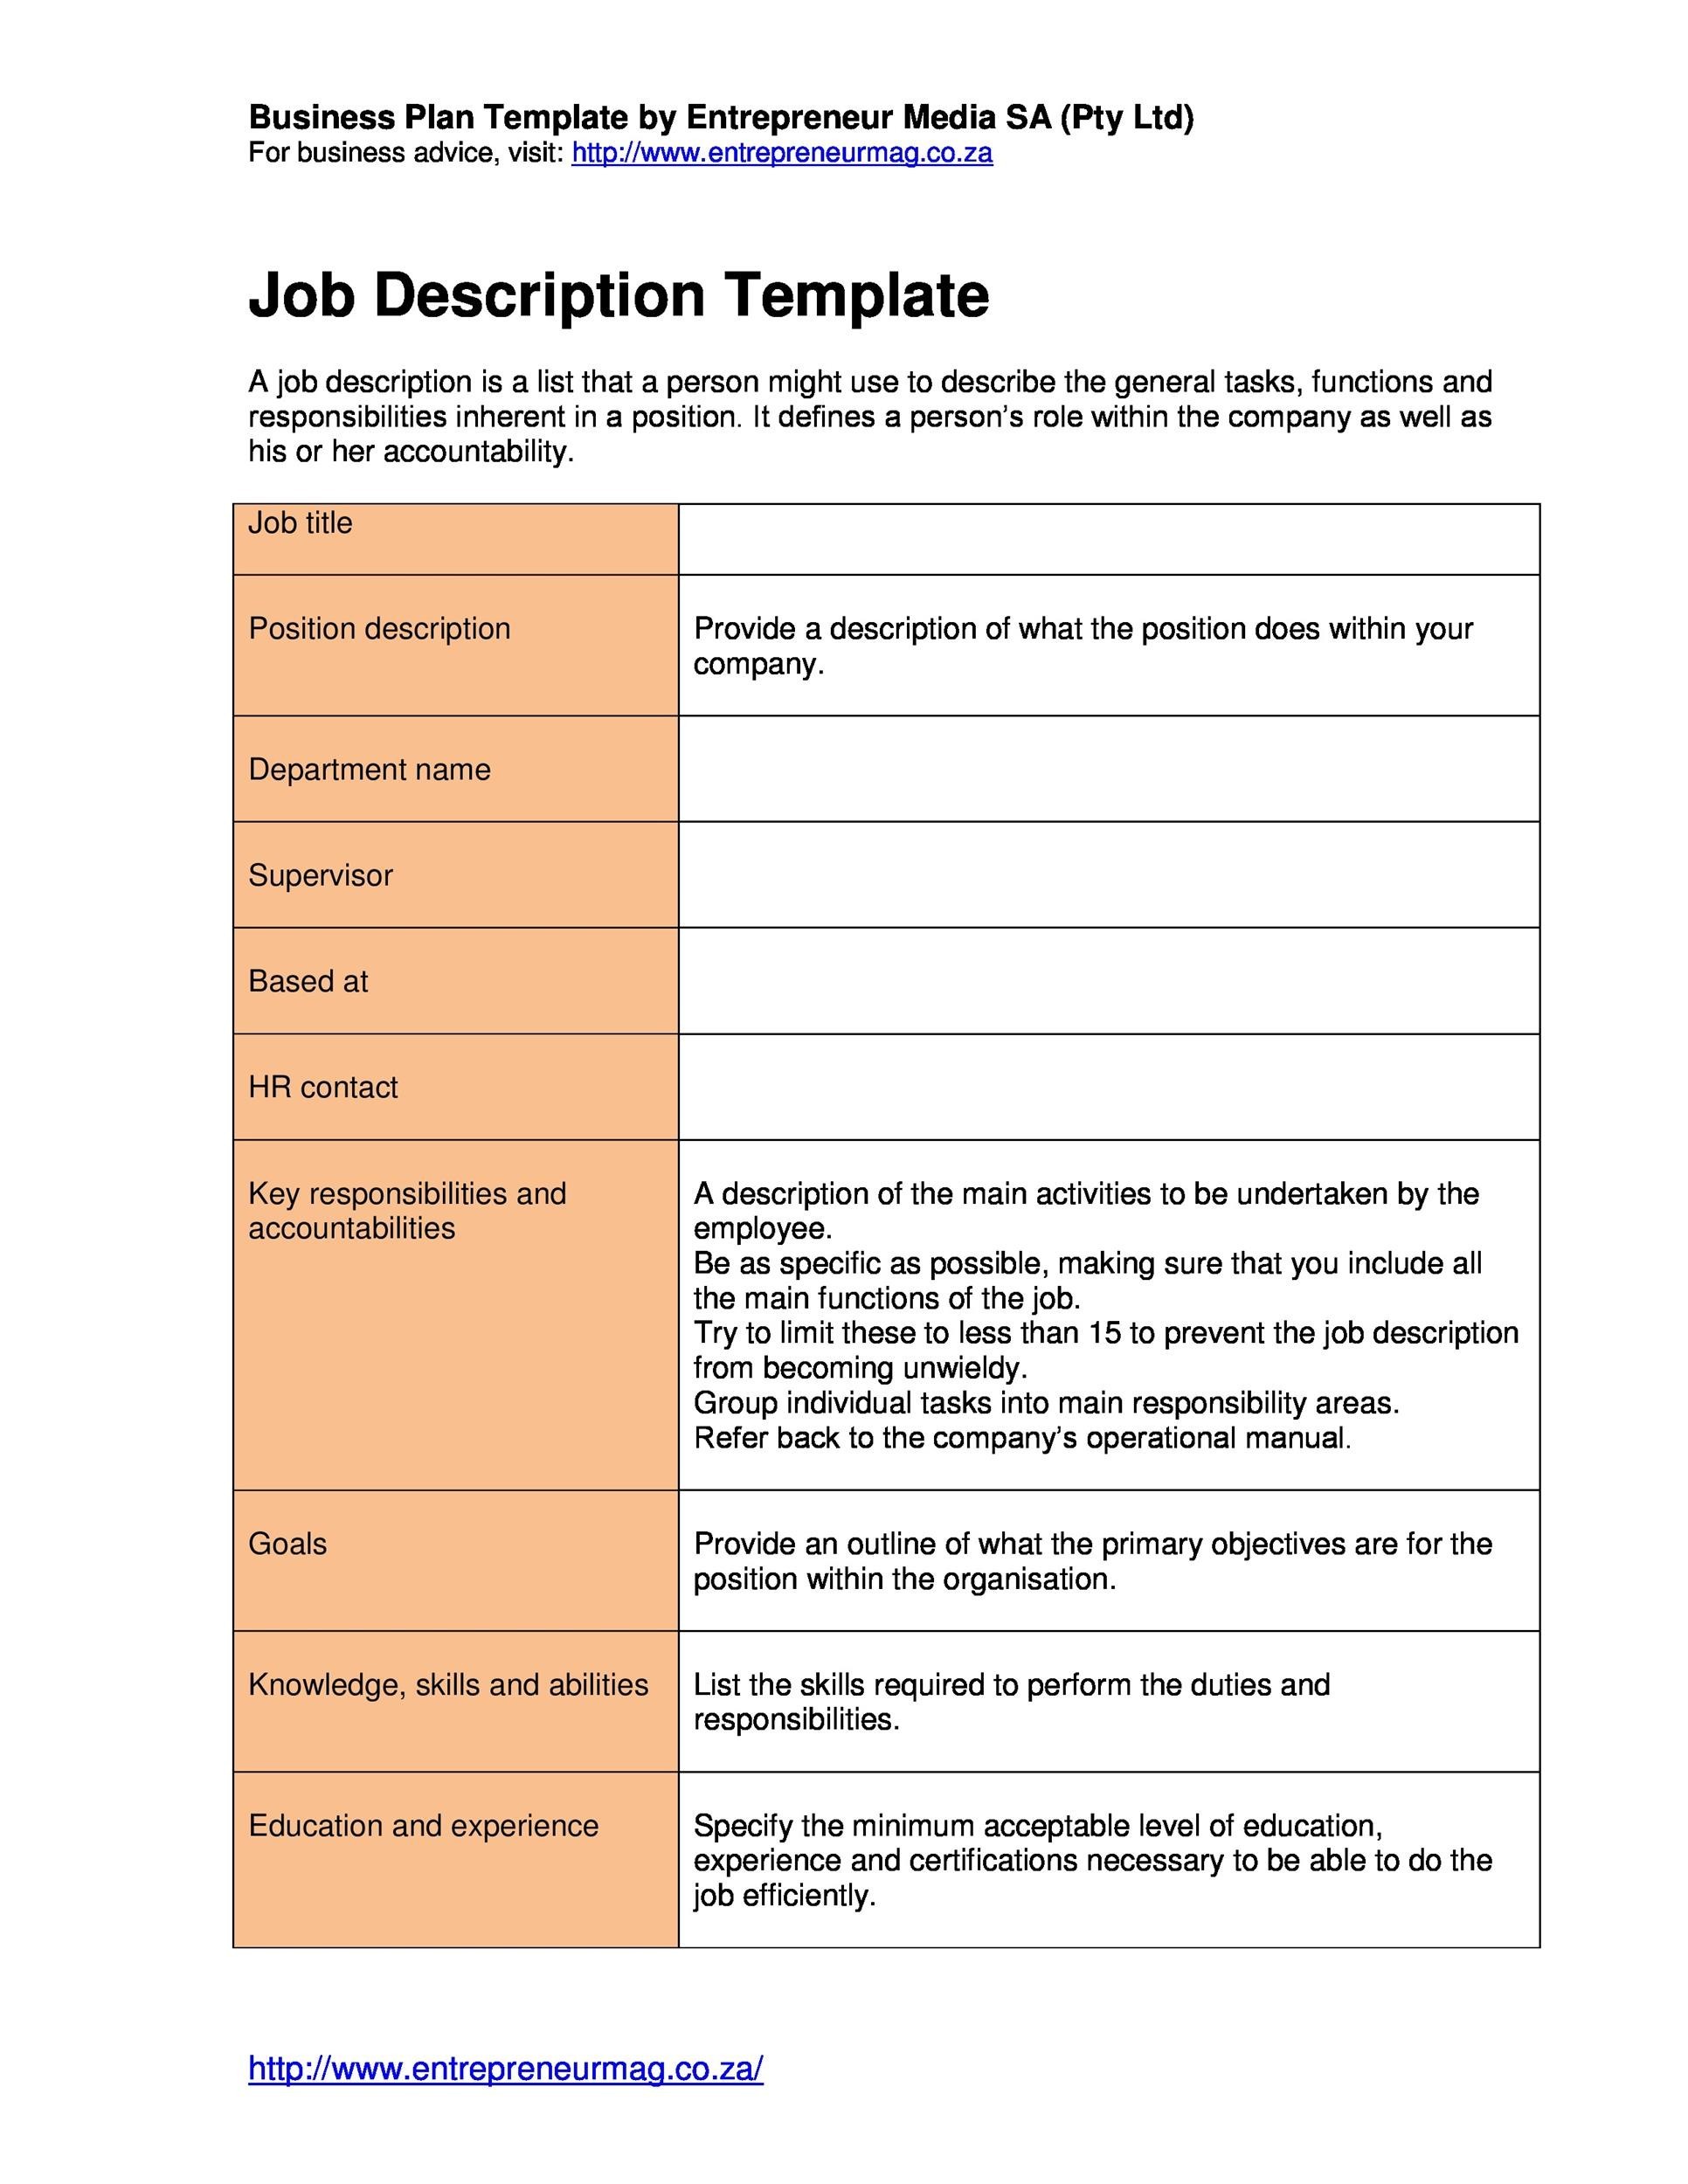 47 Job Description Templates Examples ᐅ TemplateLab